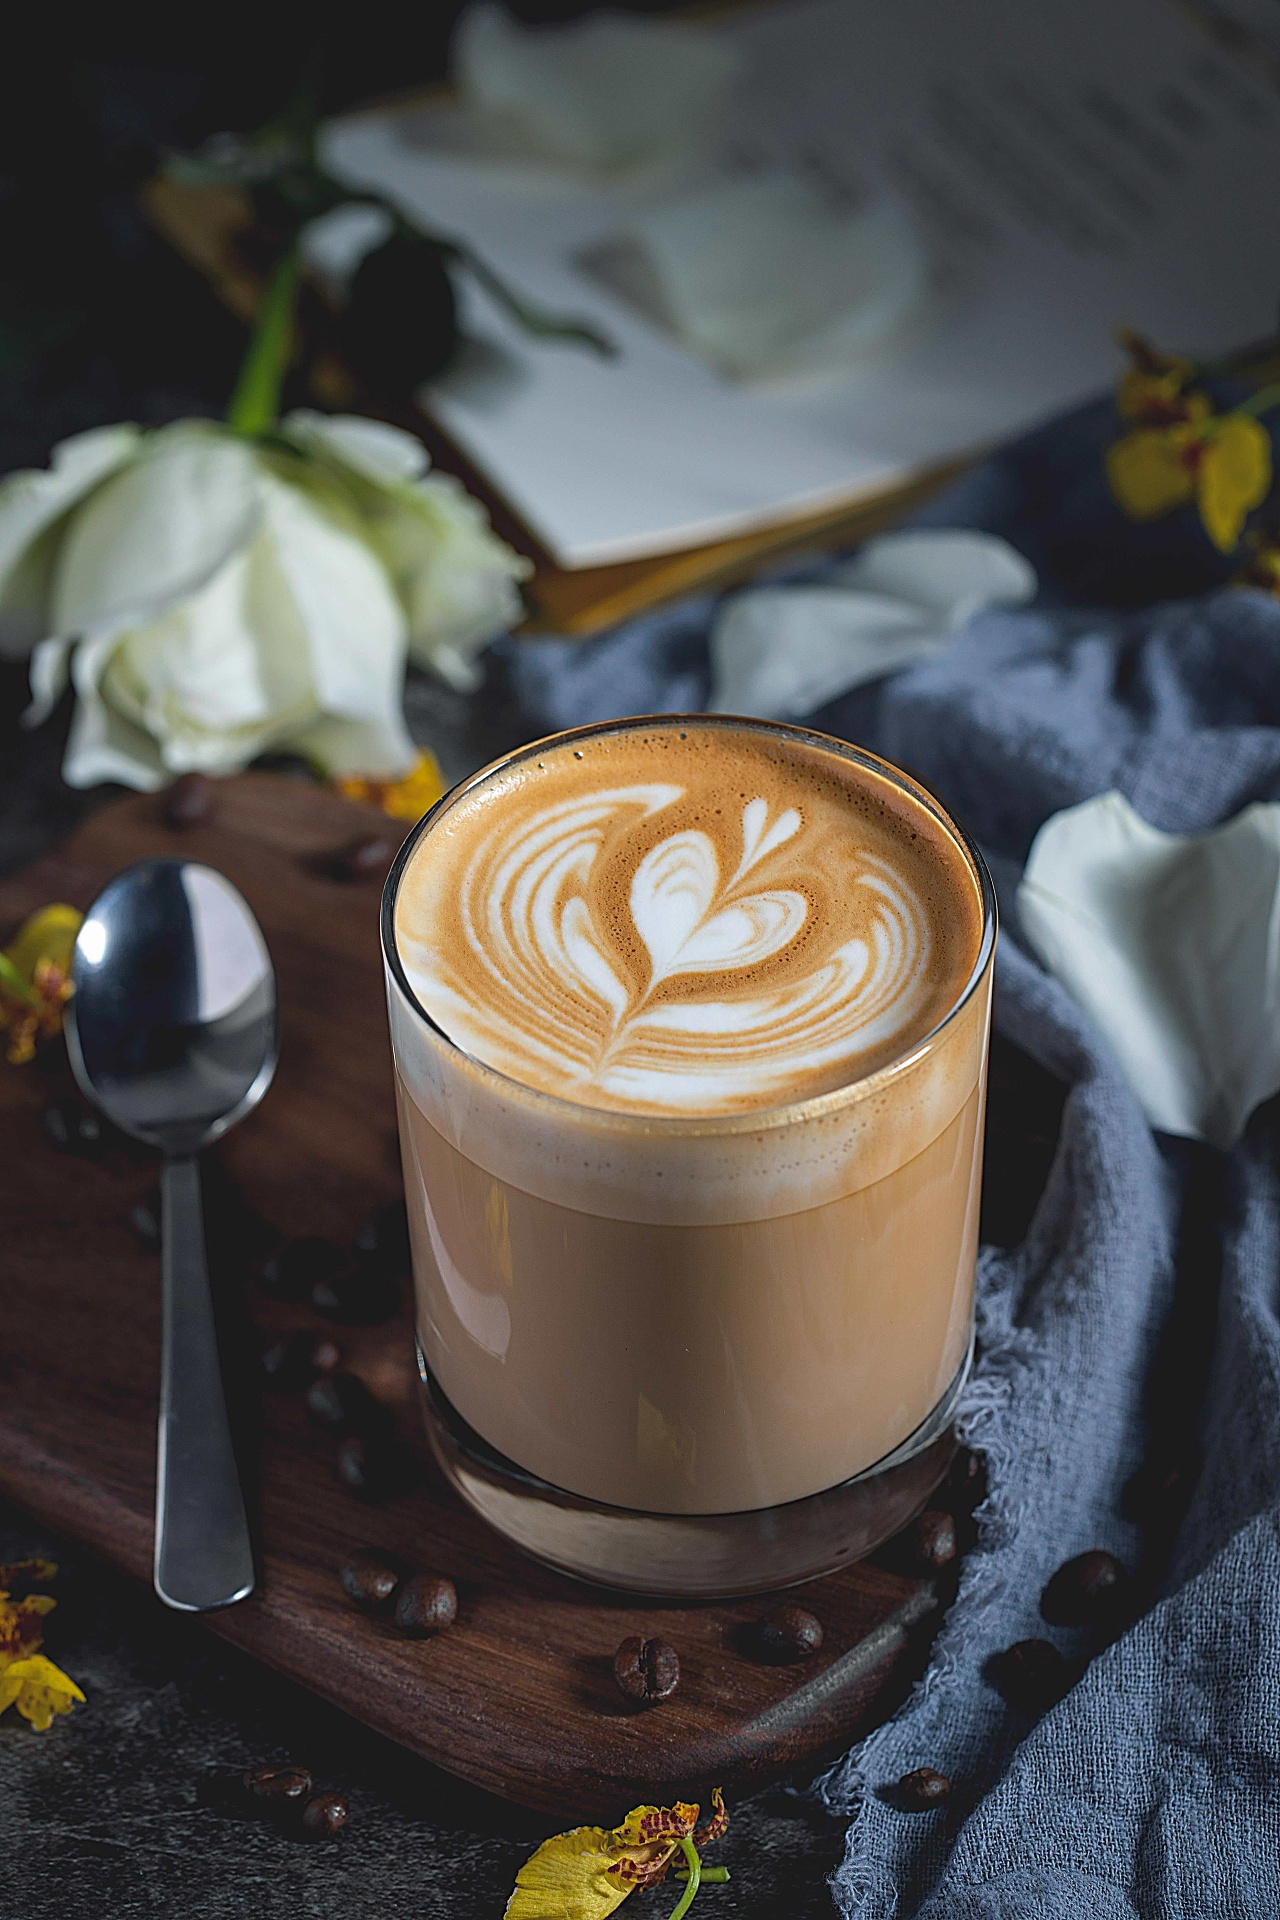 花式咖啡 | 热拿铁和冰拿铁咖啡的制作方法